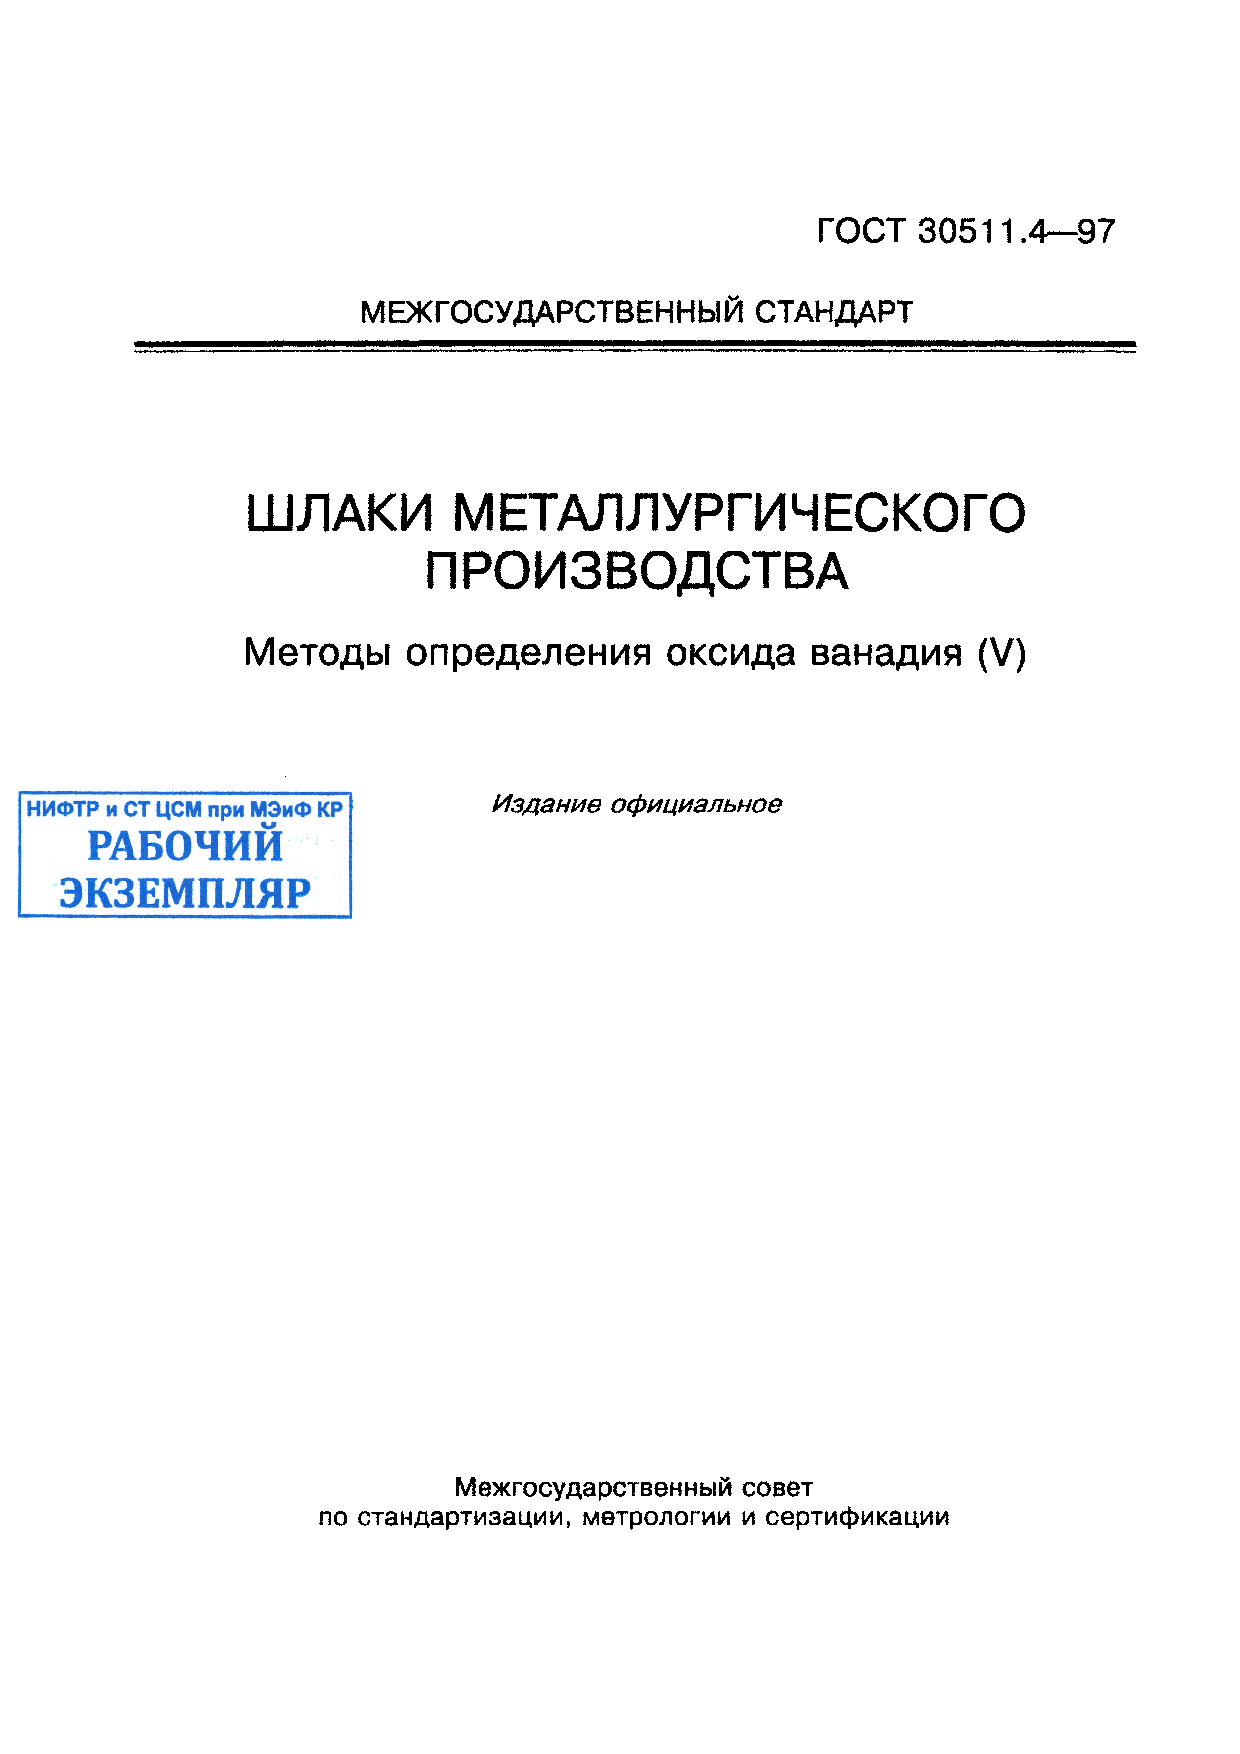 Шлаки металлургического производства. Методы определения оксида ванадия (V)